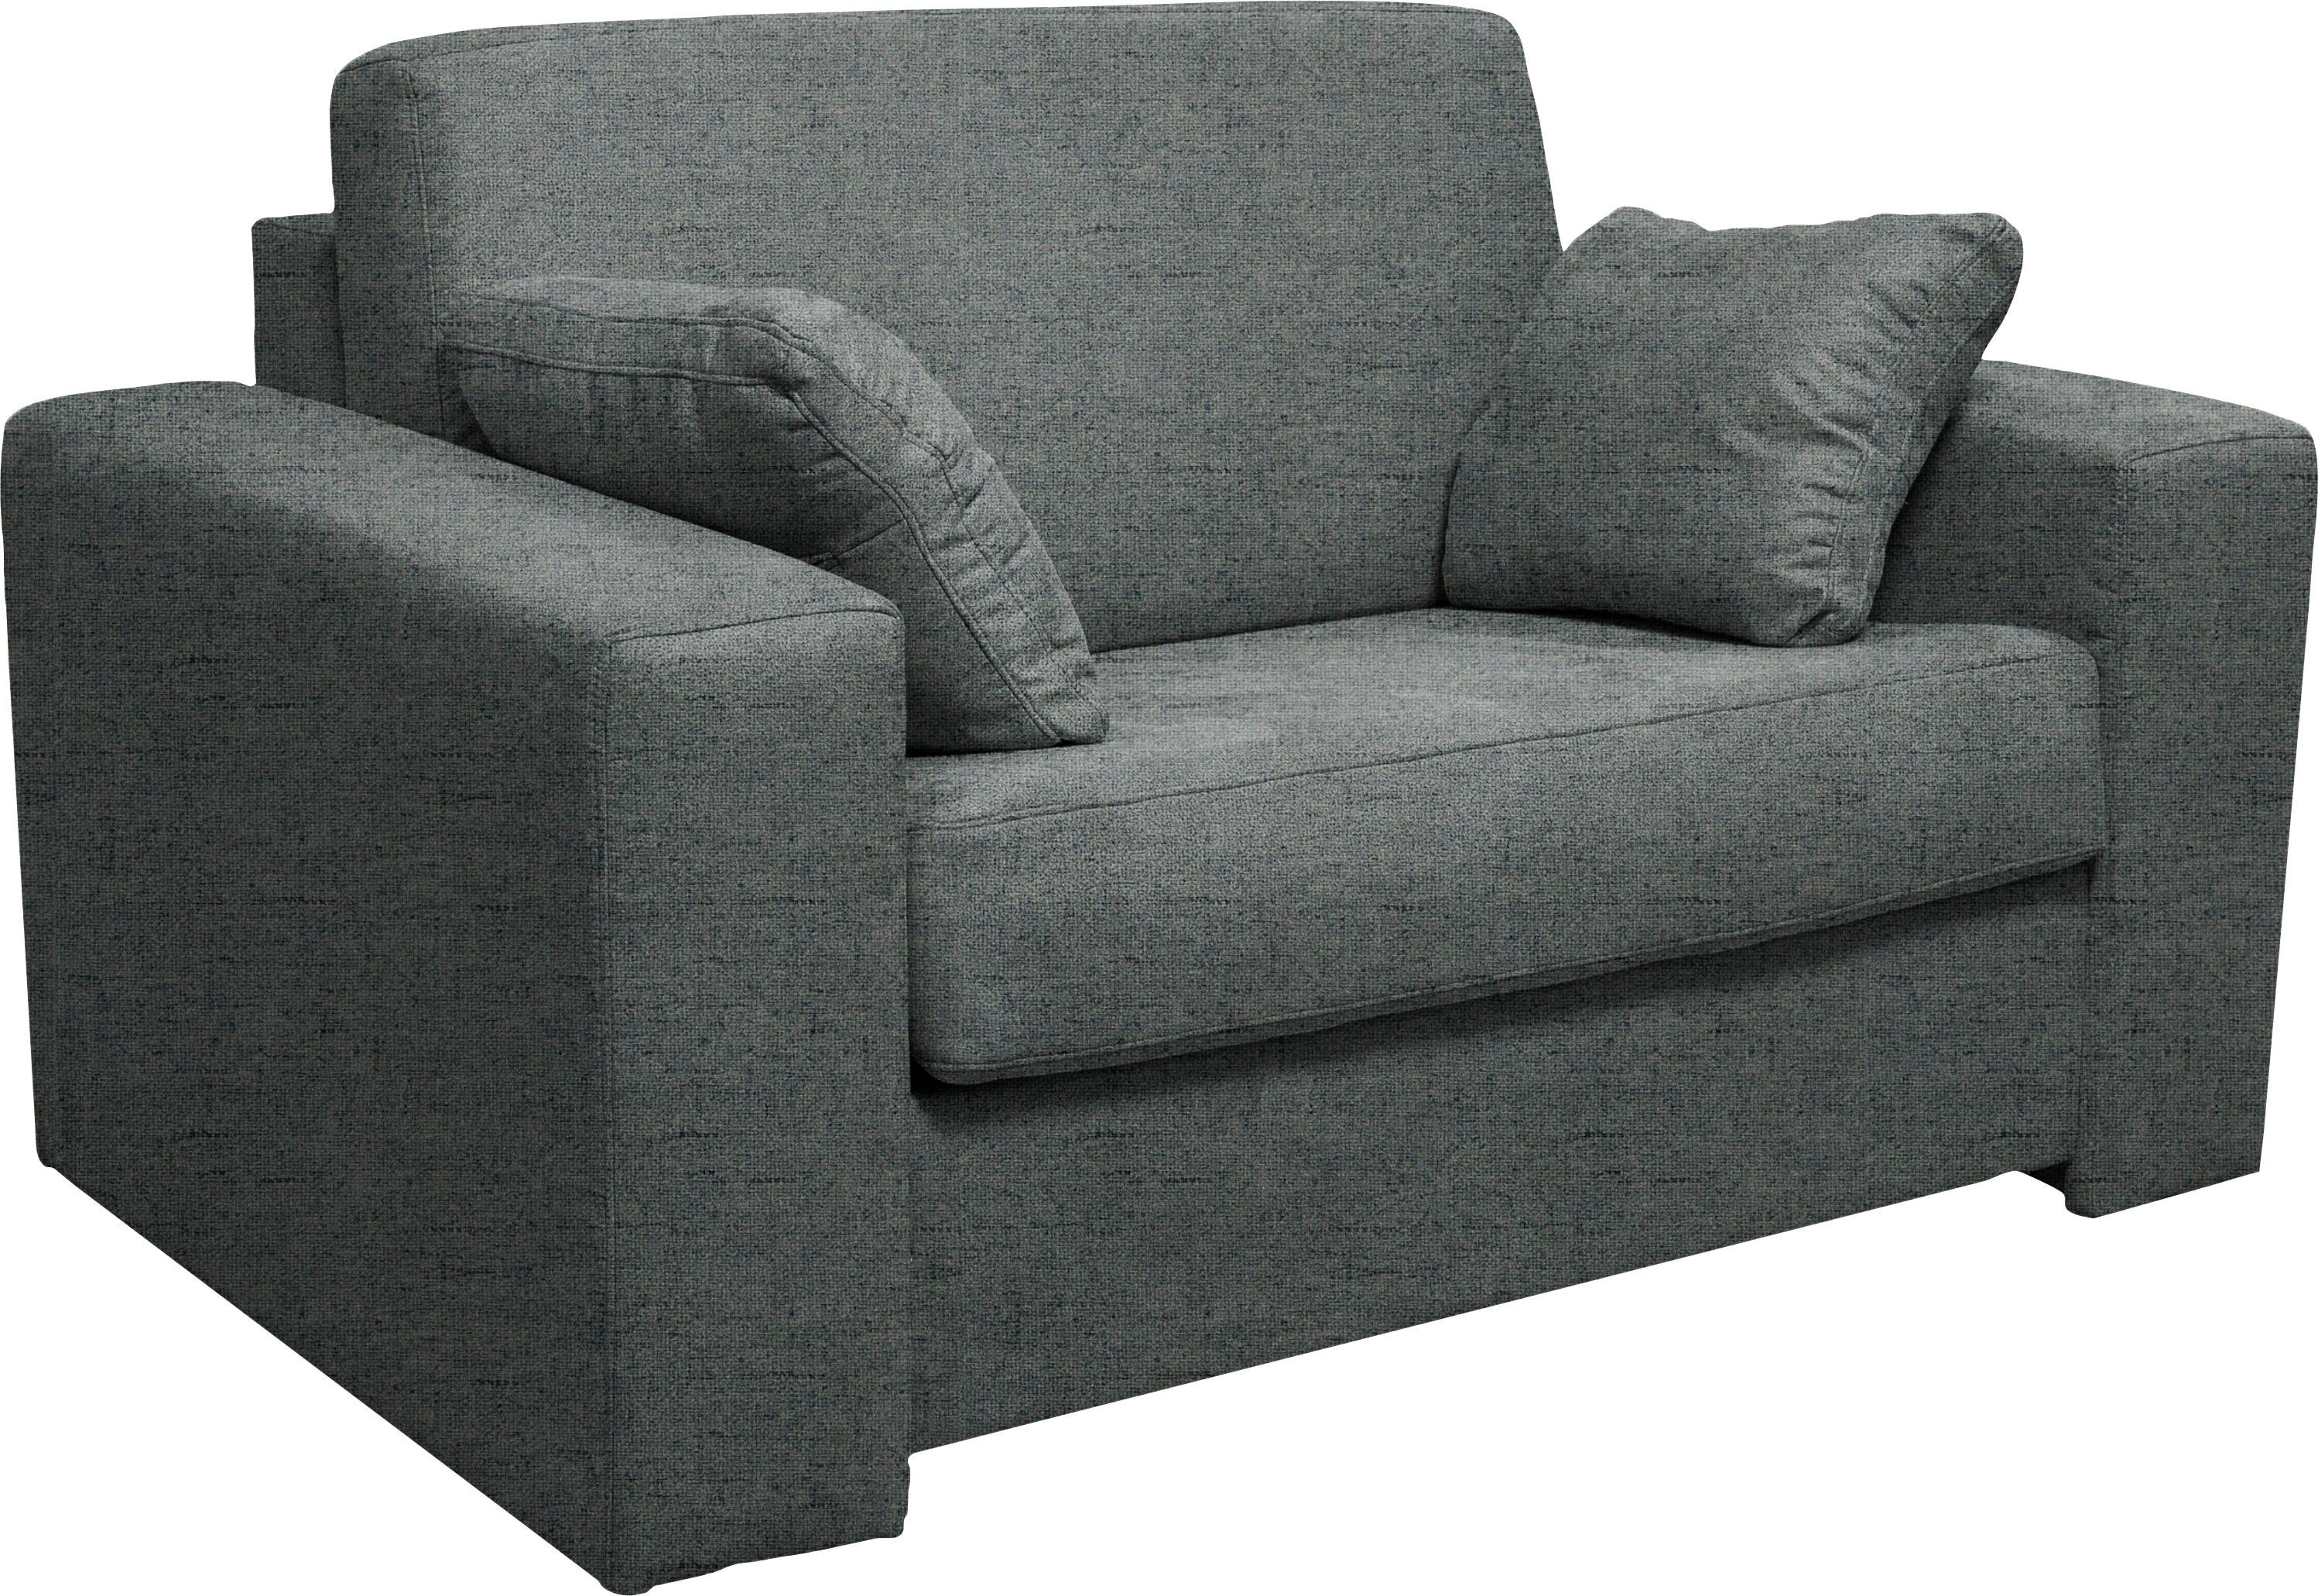 Dauerschlaffunktion, Sessel Unterfederung, ca Liegemaße Home 83x198 cm Roma, mit affaire